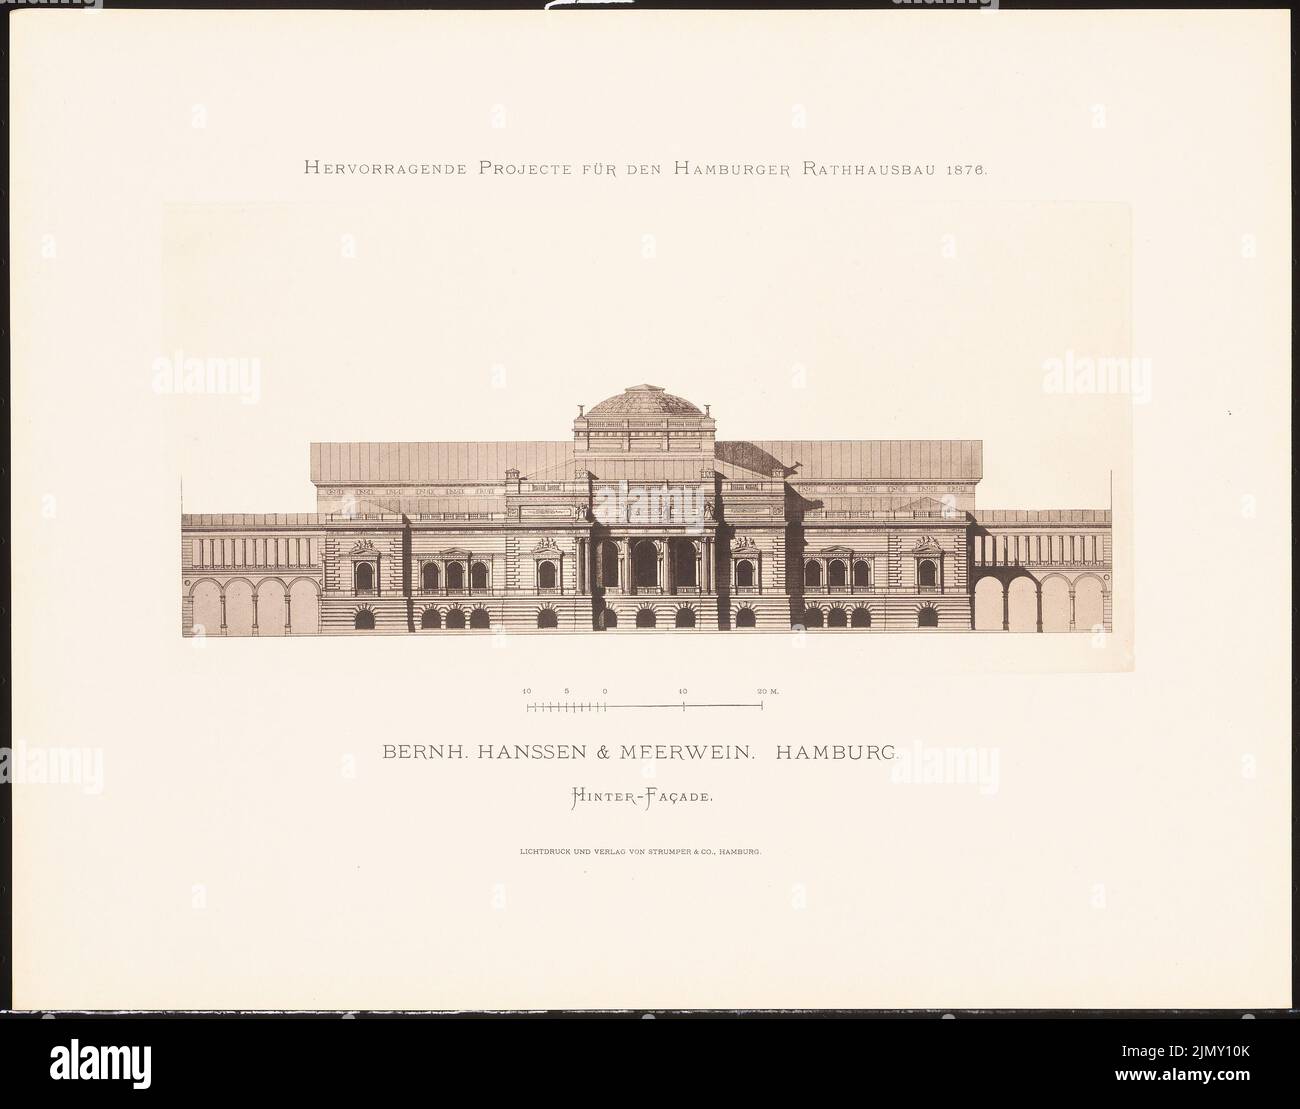 Hanssen & Meerwein, hervorragende Projekte für den Hamburger Rathausbau 1876 (1876-1876): Blick von hinten. Leichter Druck auf Papier, 35,3 x 45 cm (einschließlich Scankanten) Stockfoto